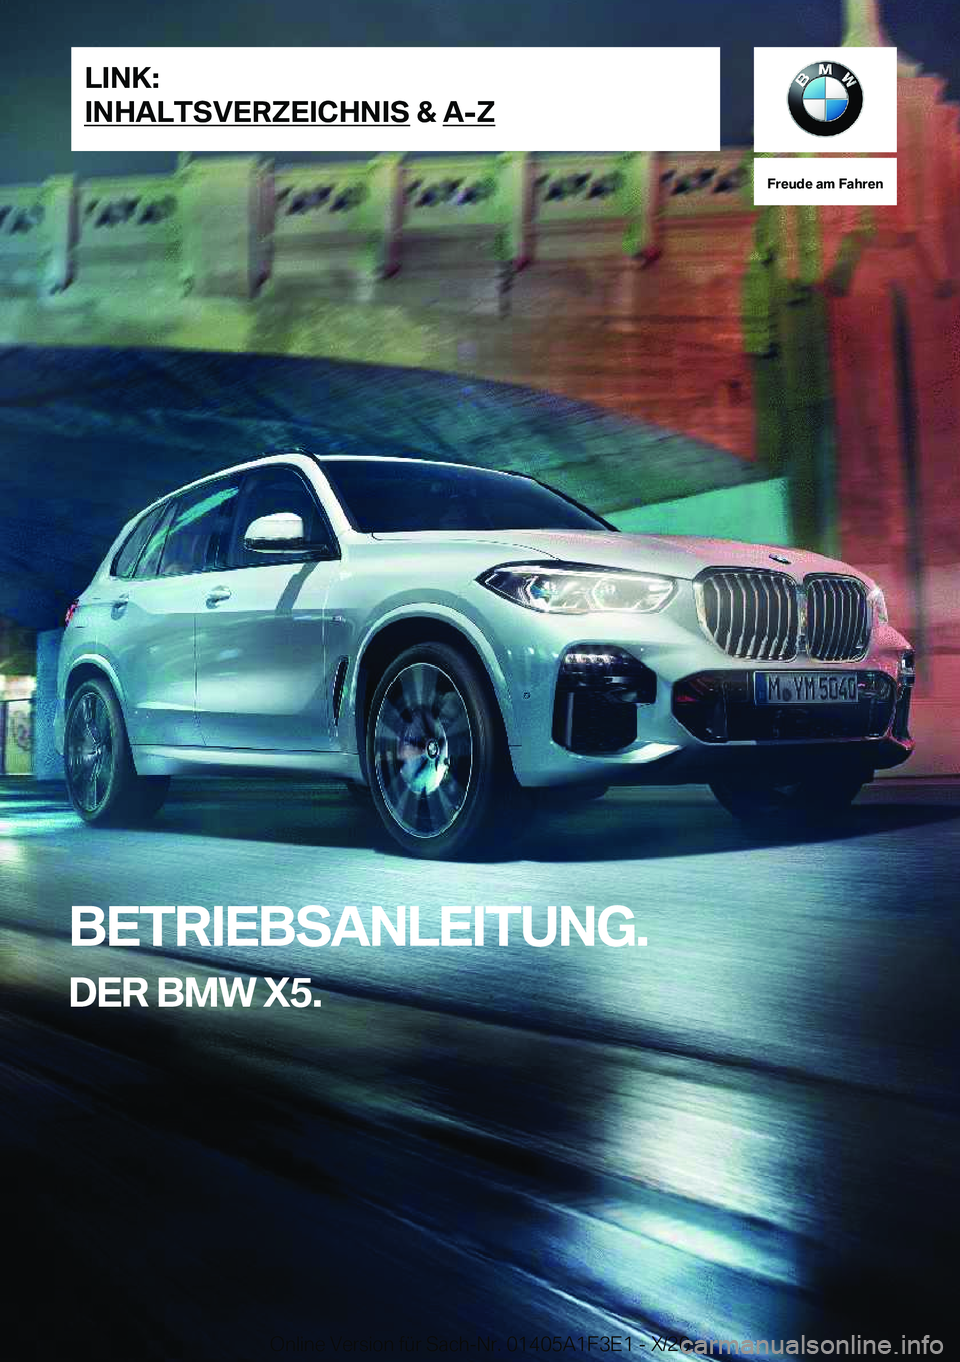 BMW X5 2021  Betriebsanleitungen (in German) �F�r�e�u�d�e��a�m��F�a�h�r�e�n
�B�E�T�R�I�E�B�S�A�N�L�E�I�T�U�N�G�.�D�E�R��B�M�W��X�5�.�L�I�N�K�:
�I�N�H�A�L�T�S�V�E�R�Z�E�I�C�H�N�I�S��&��A�-�Z�O�n�l�i�n�e��V�e�r�s�i�o�n��f�